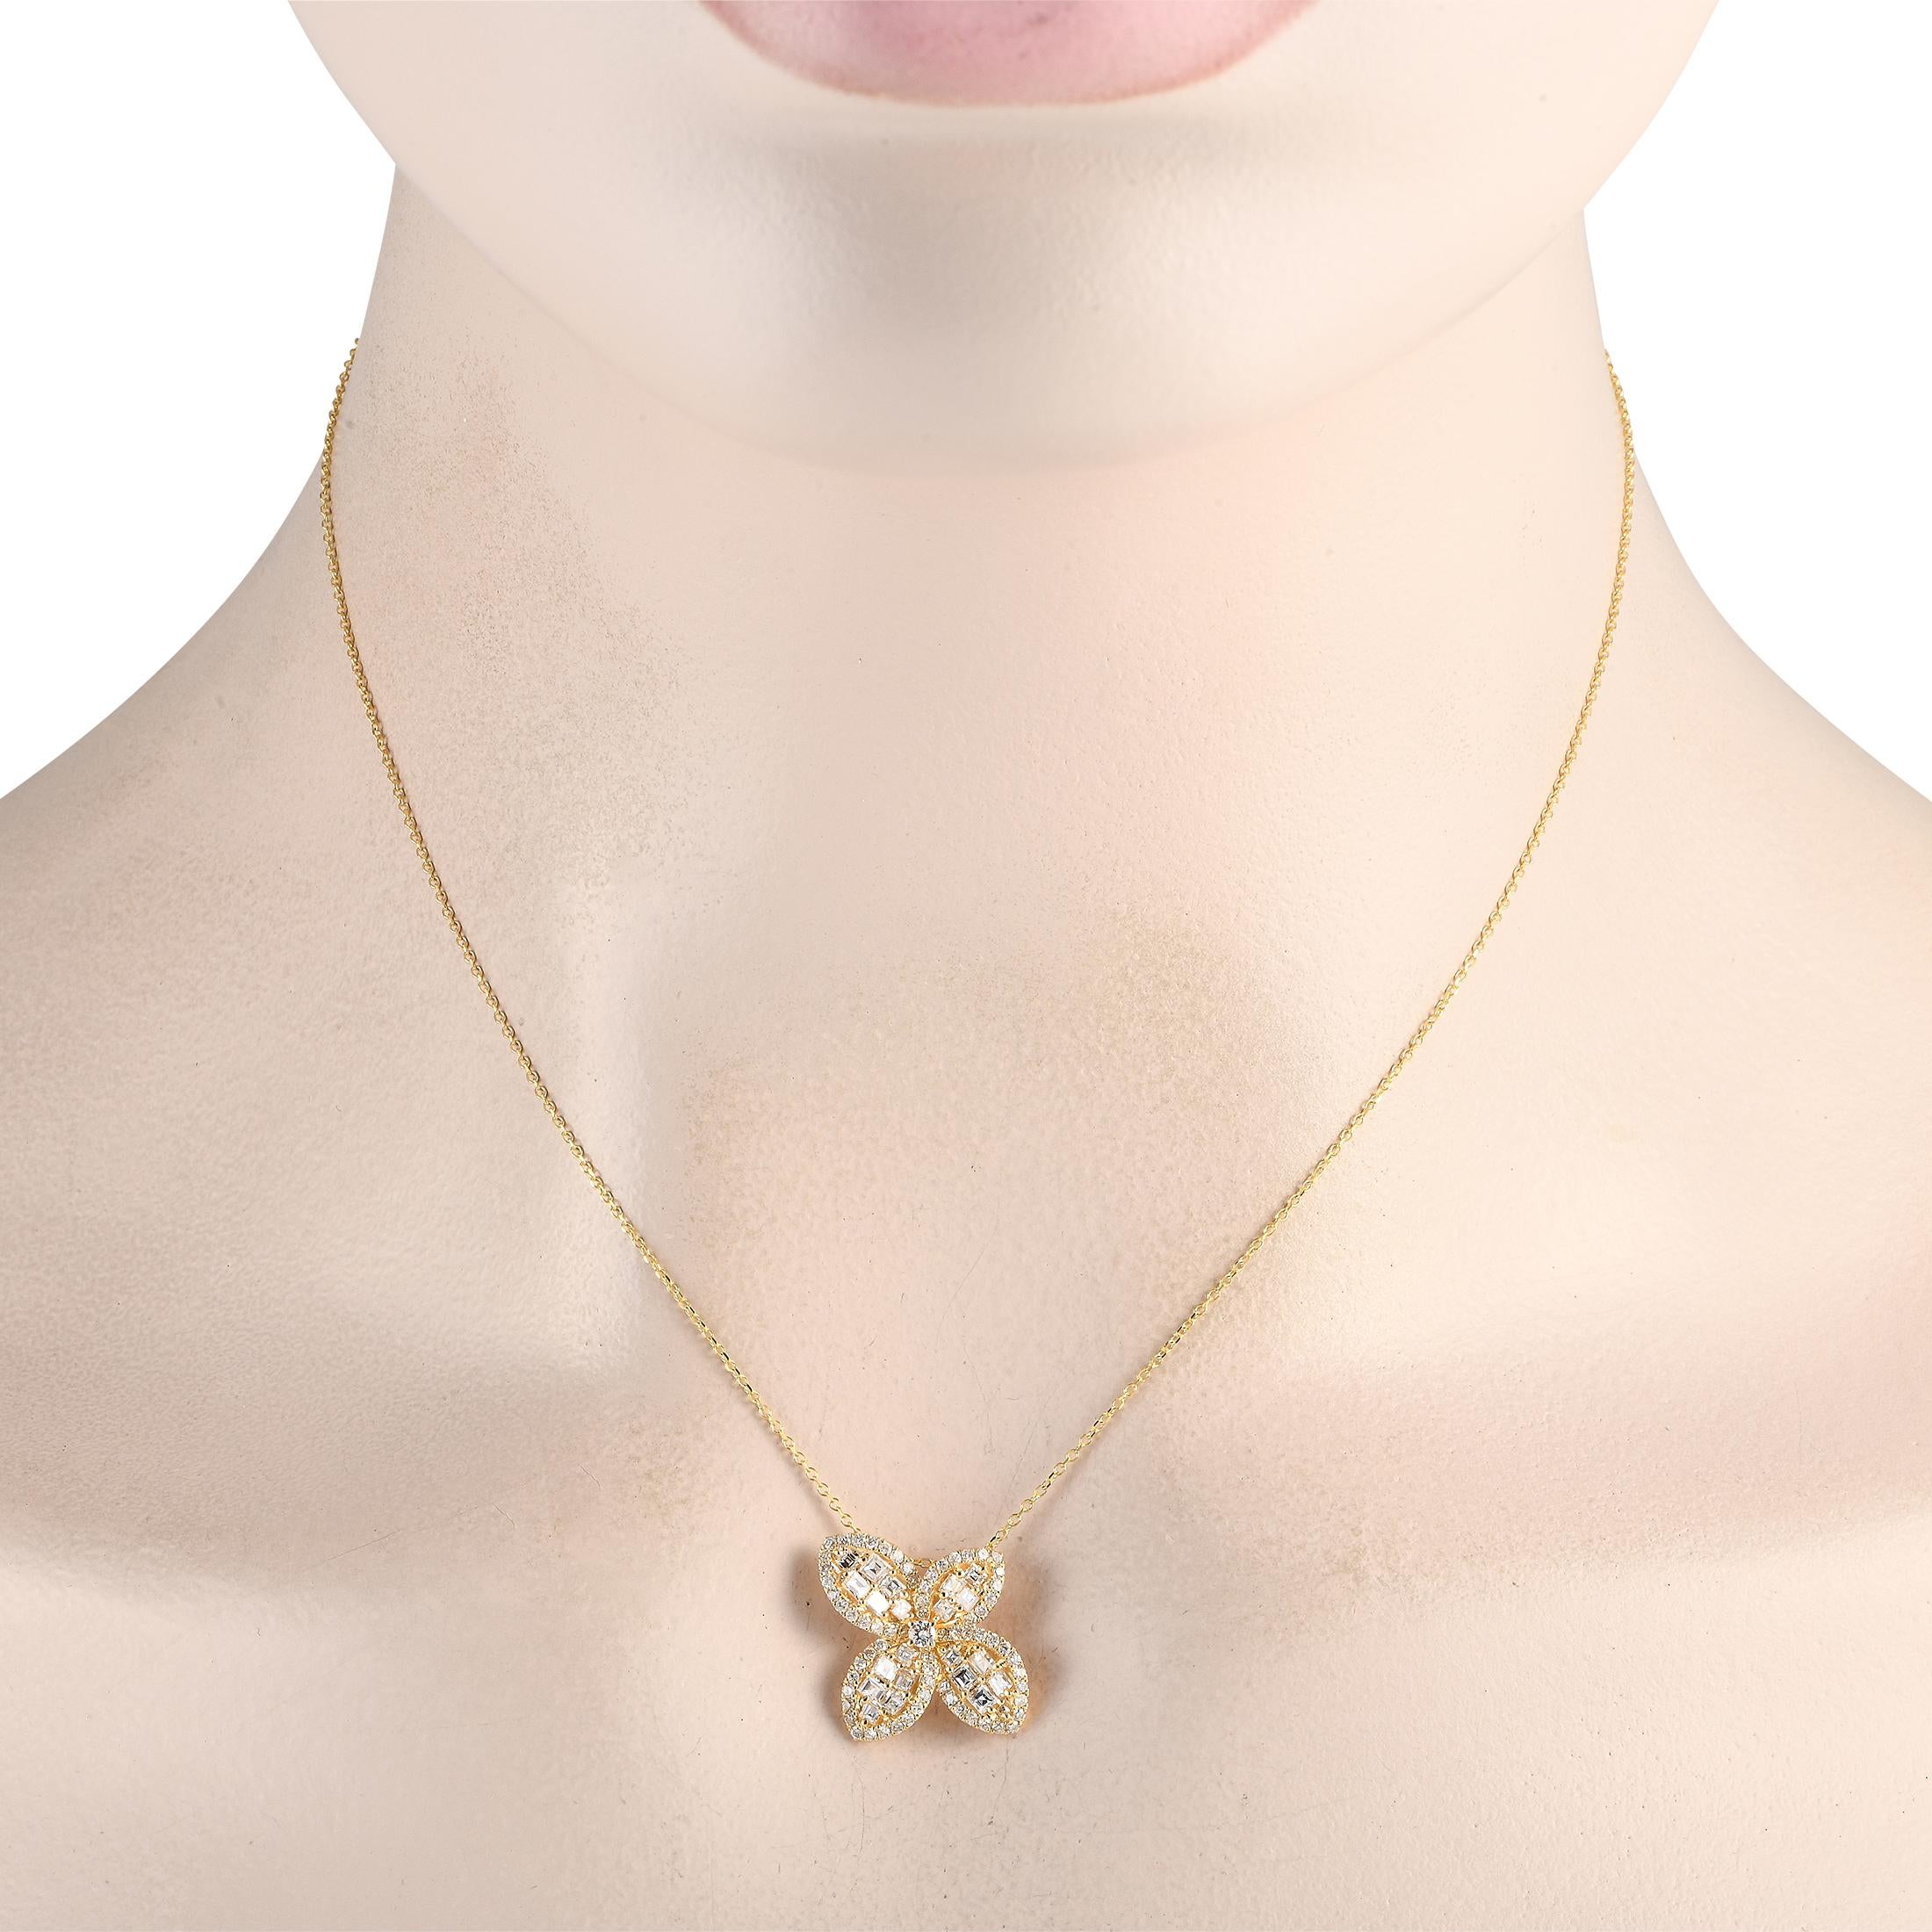 Un pendentif floral abstrait confère à cet élégant collier en or jaune 18 carats une touche artistique. Fabriqué en or jaune 18 carats, le pendentif mesure 0,65 rond et est suspendu à une chaîne élégante de 16 maillons. Des diamants de taille